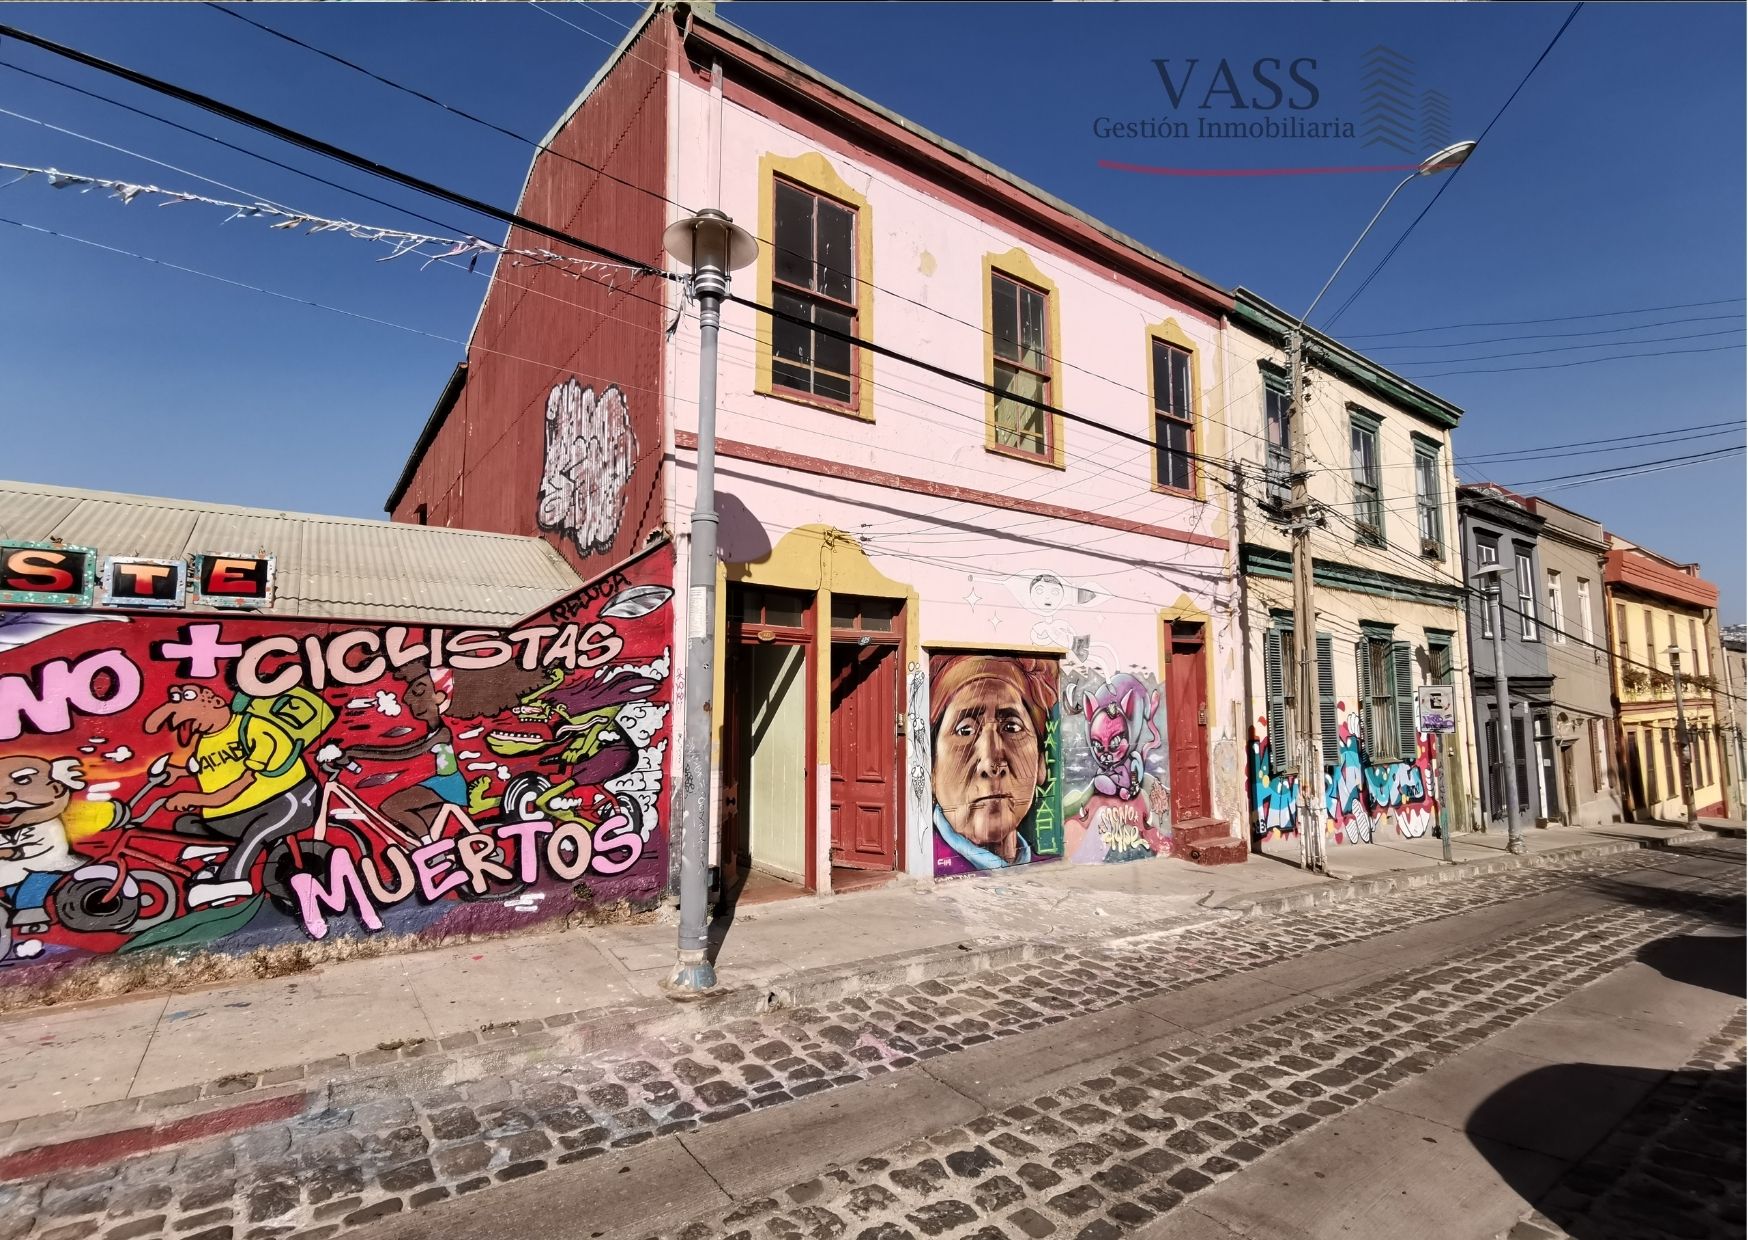 VASS Vende Casa En Cerro Alegre, sector turístico, Valparaiso